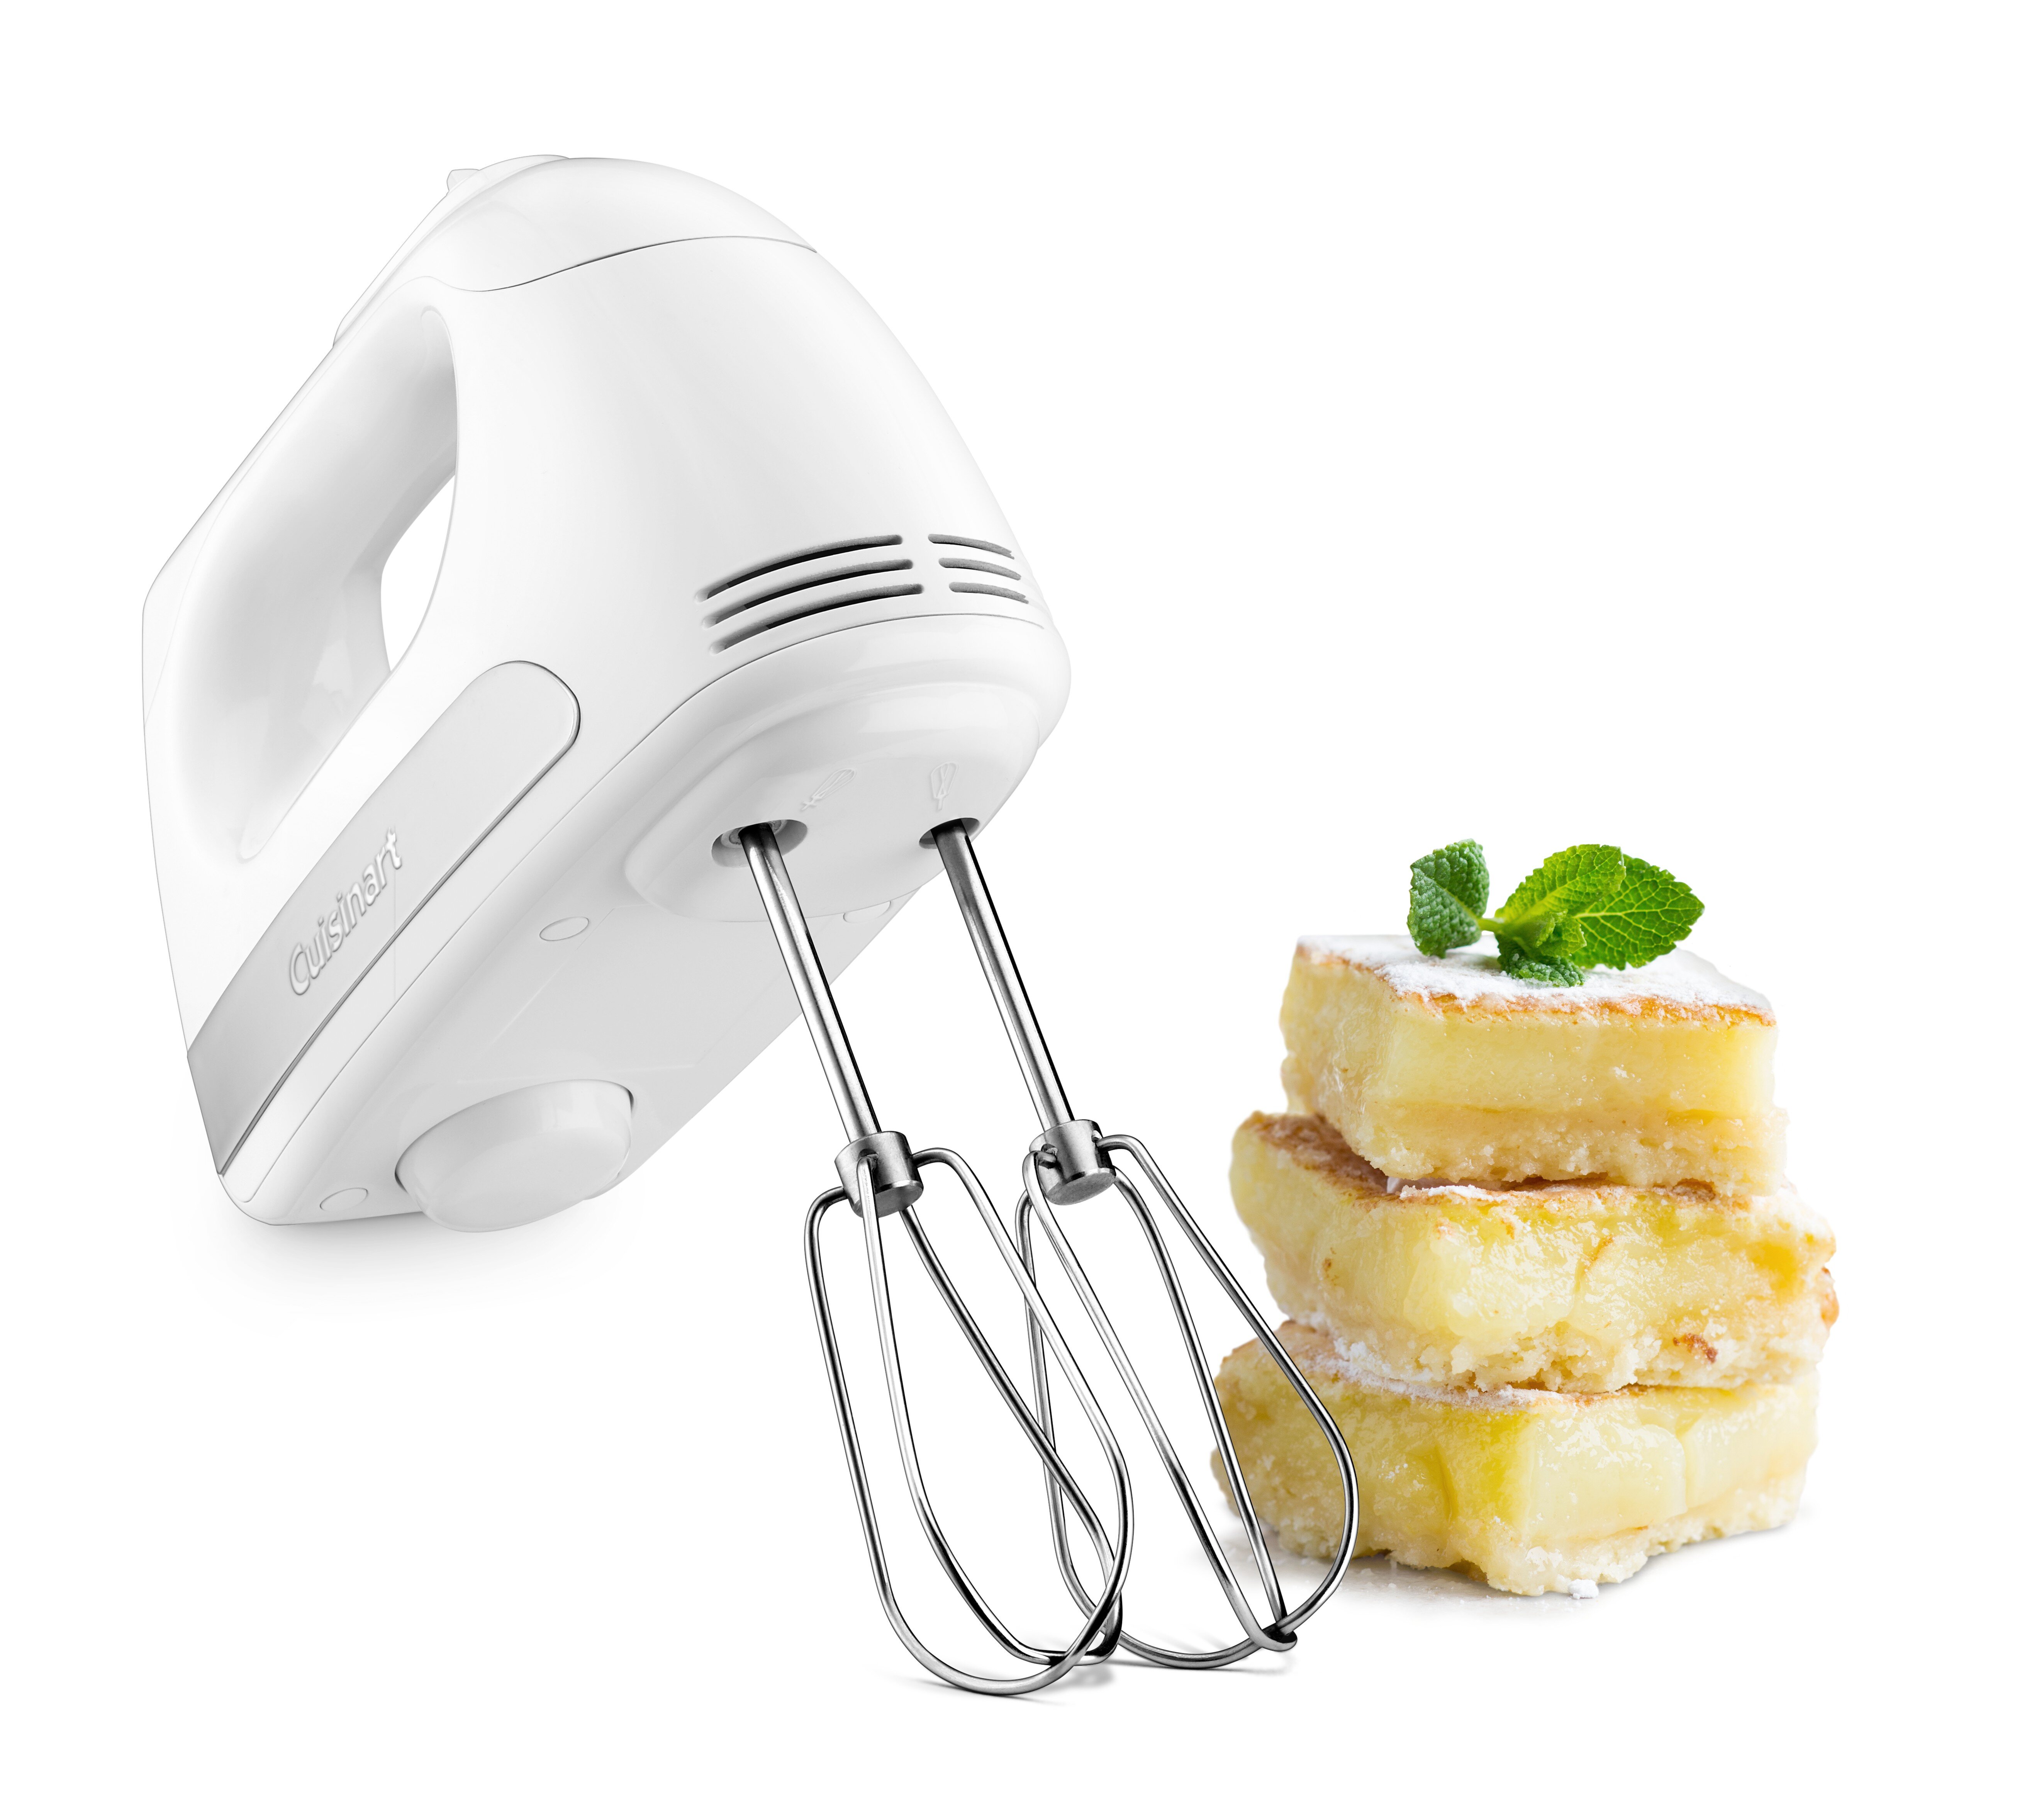 Cuisinart Power Advantage 3-Speed Hand Mixer & Reviews